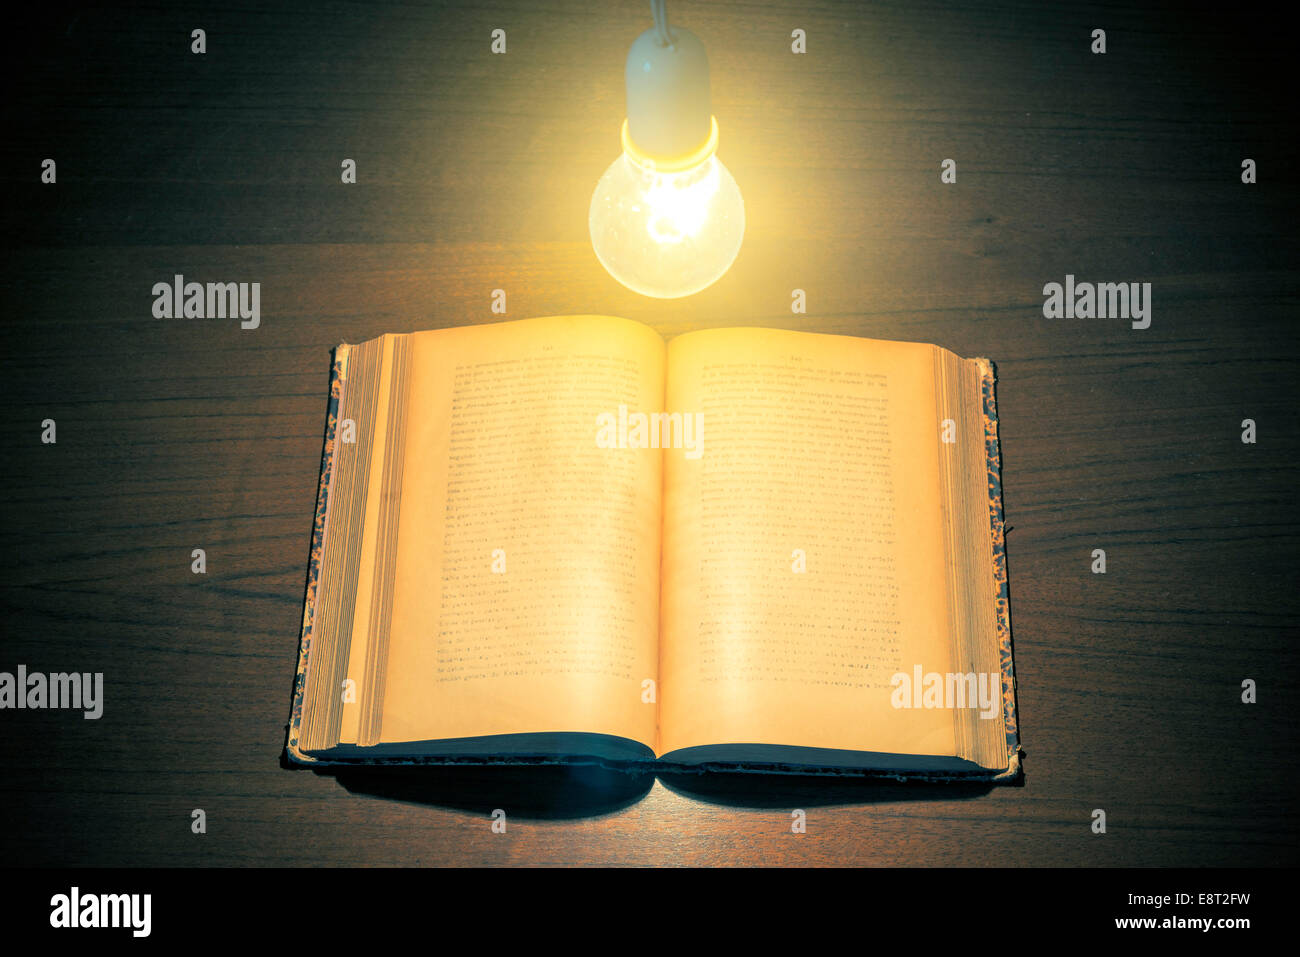 Lampadina elettrica illuminazione di un libro Foto Stock